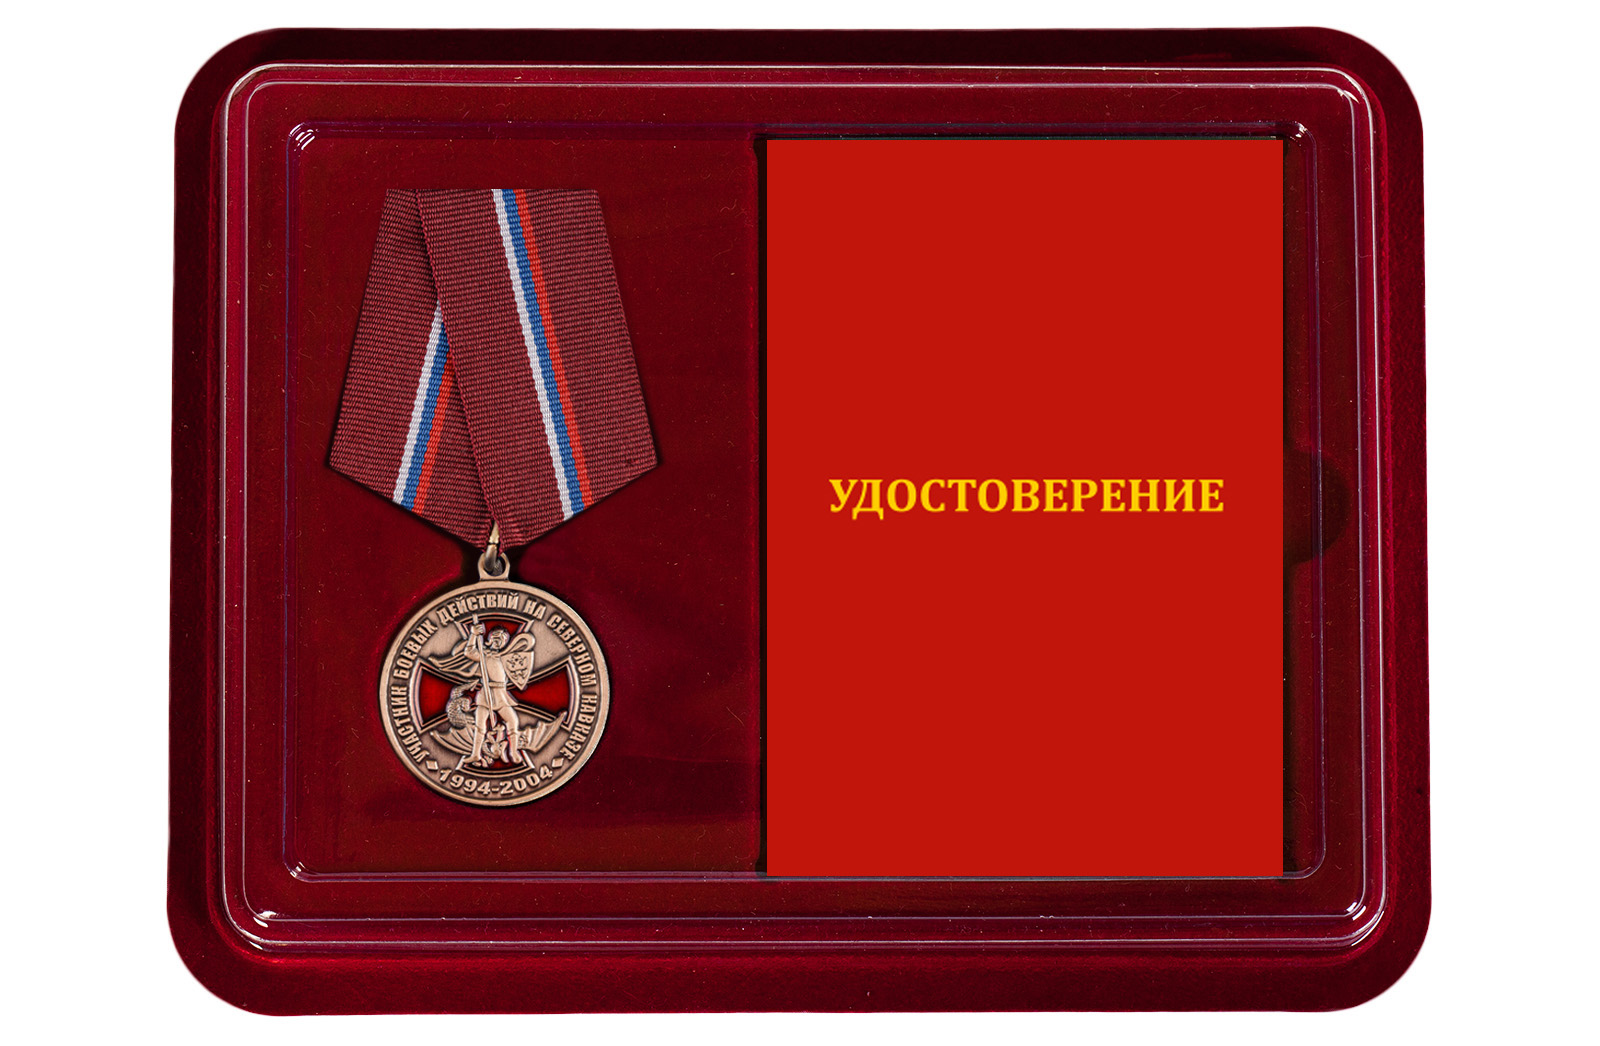 Купить медаль Участник боевых действий на Северном Кавказе онлайн